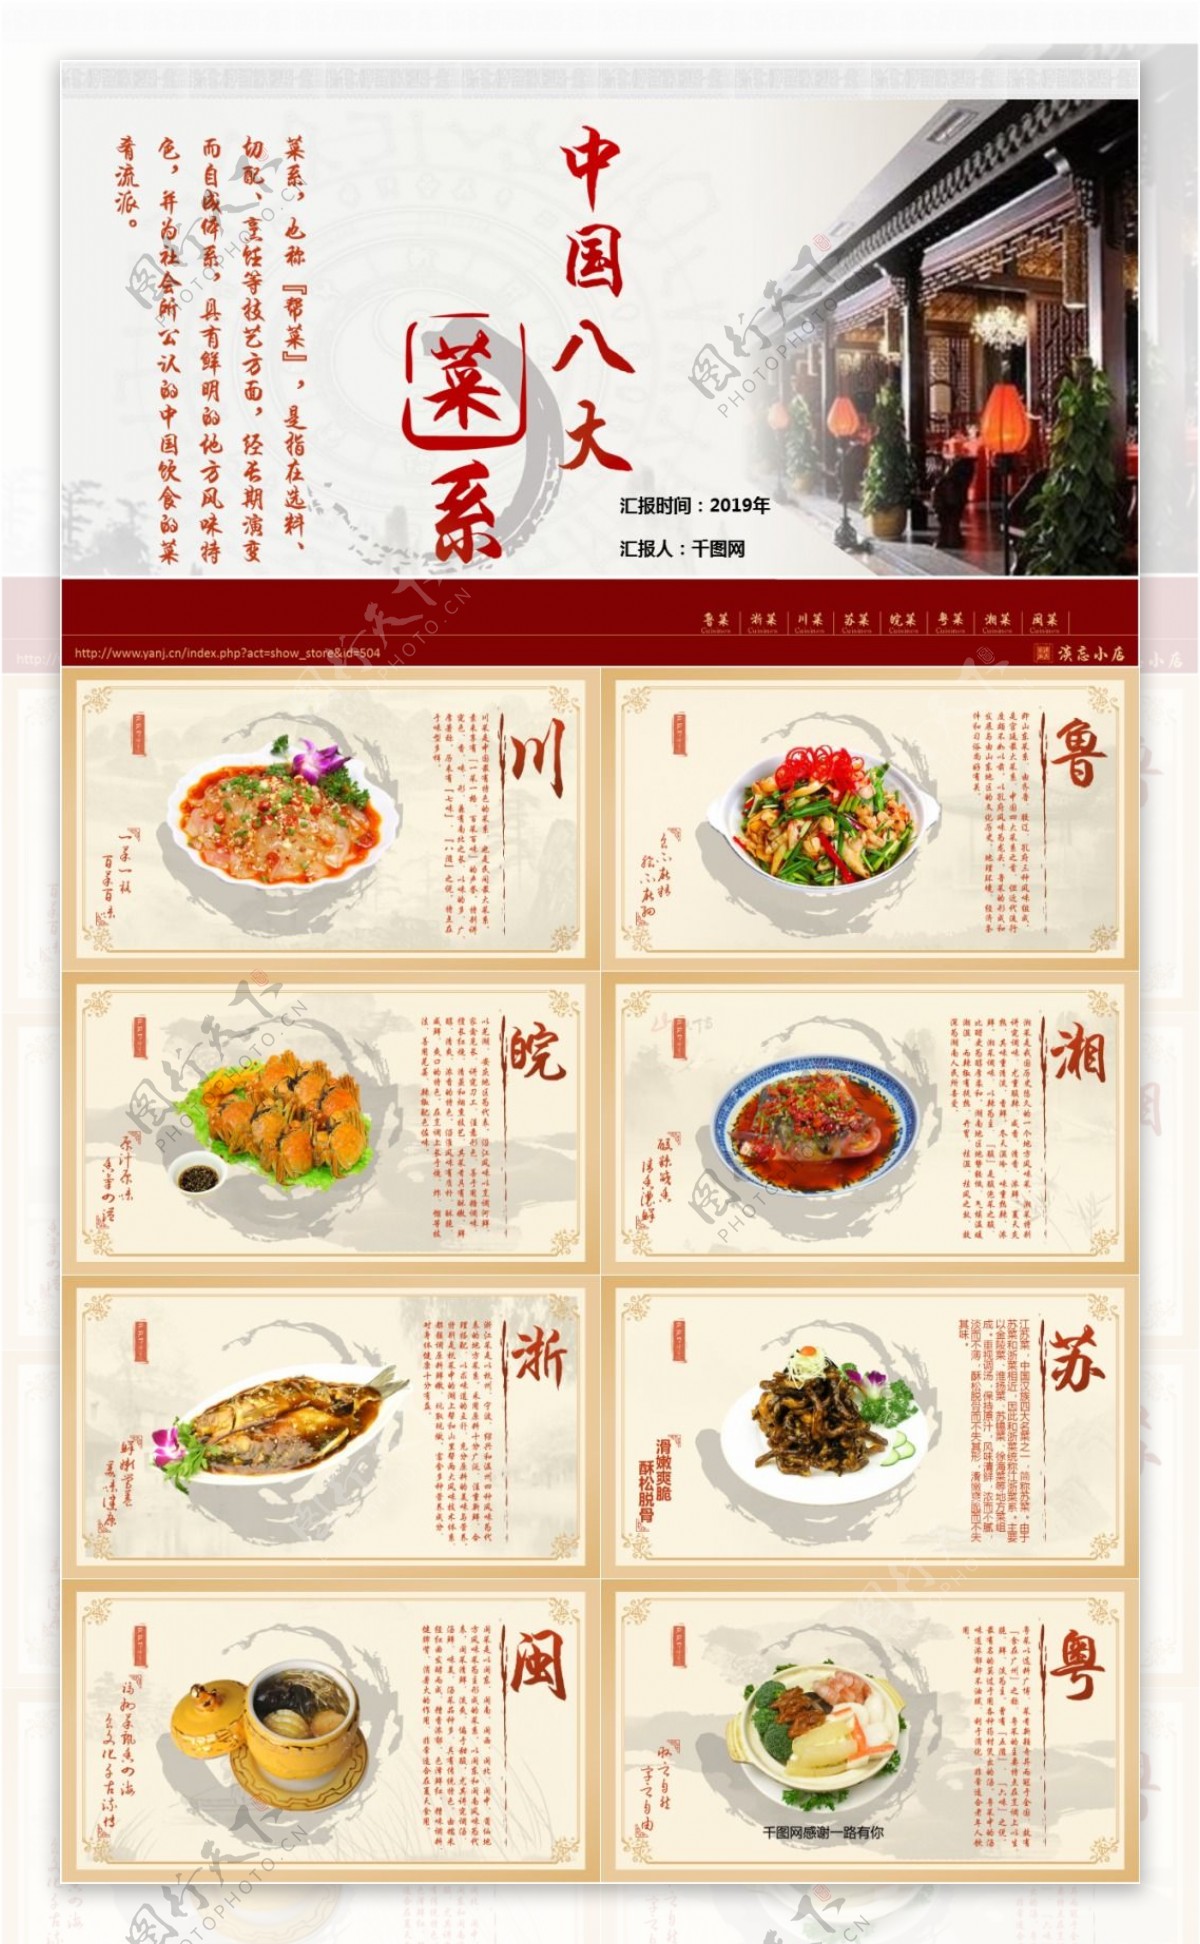 中国八大菜系产品介绍ppt模板免费下载